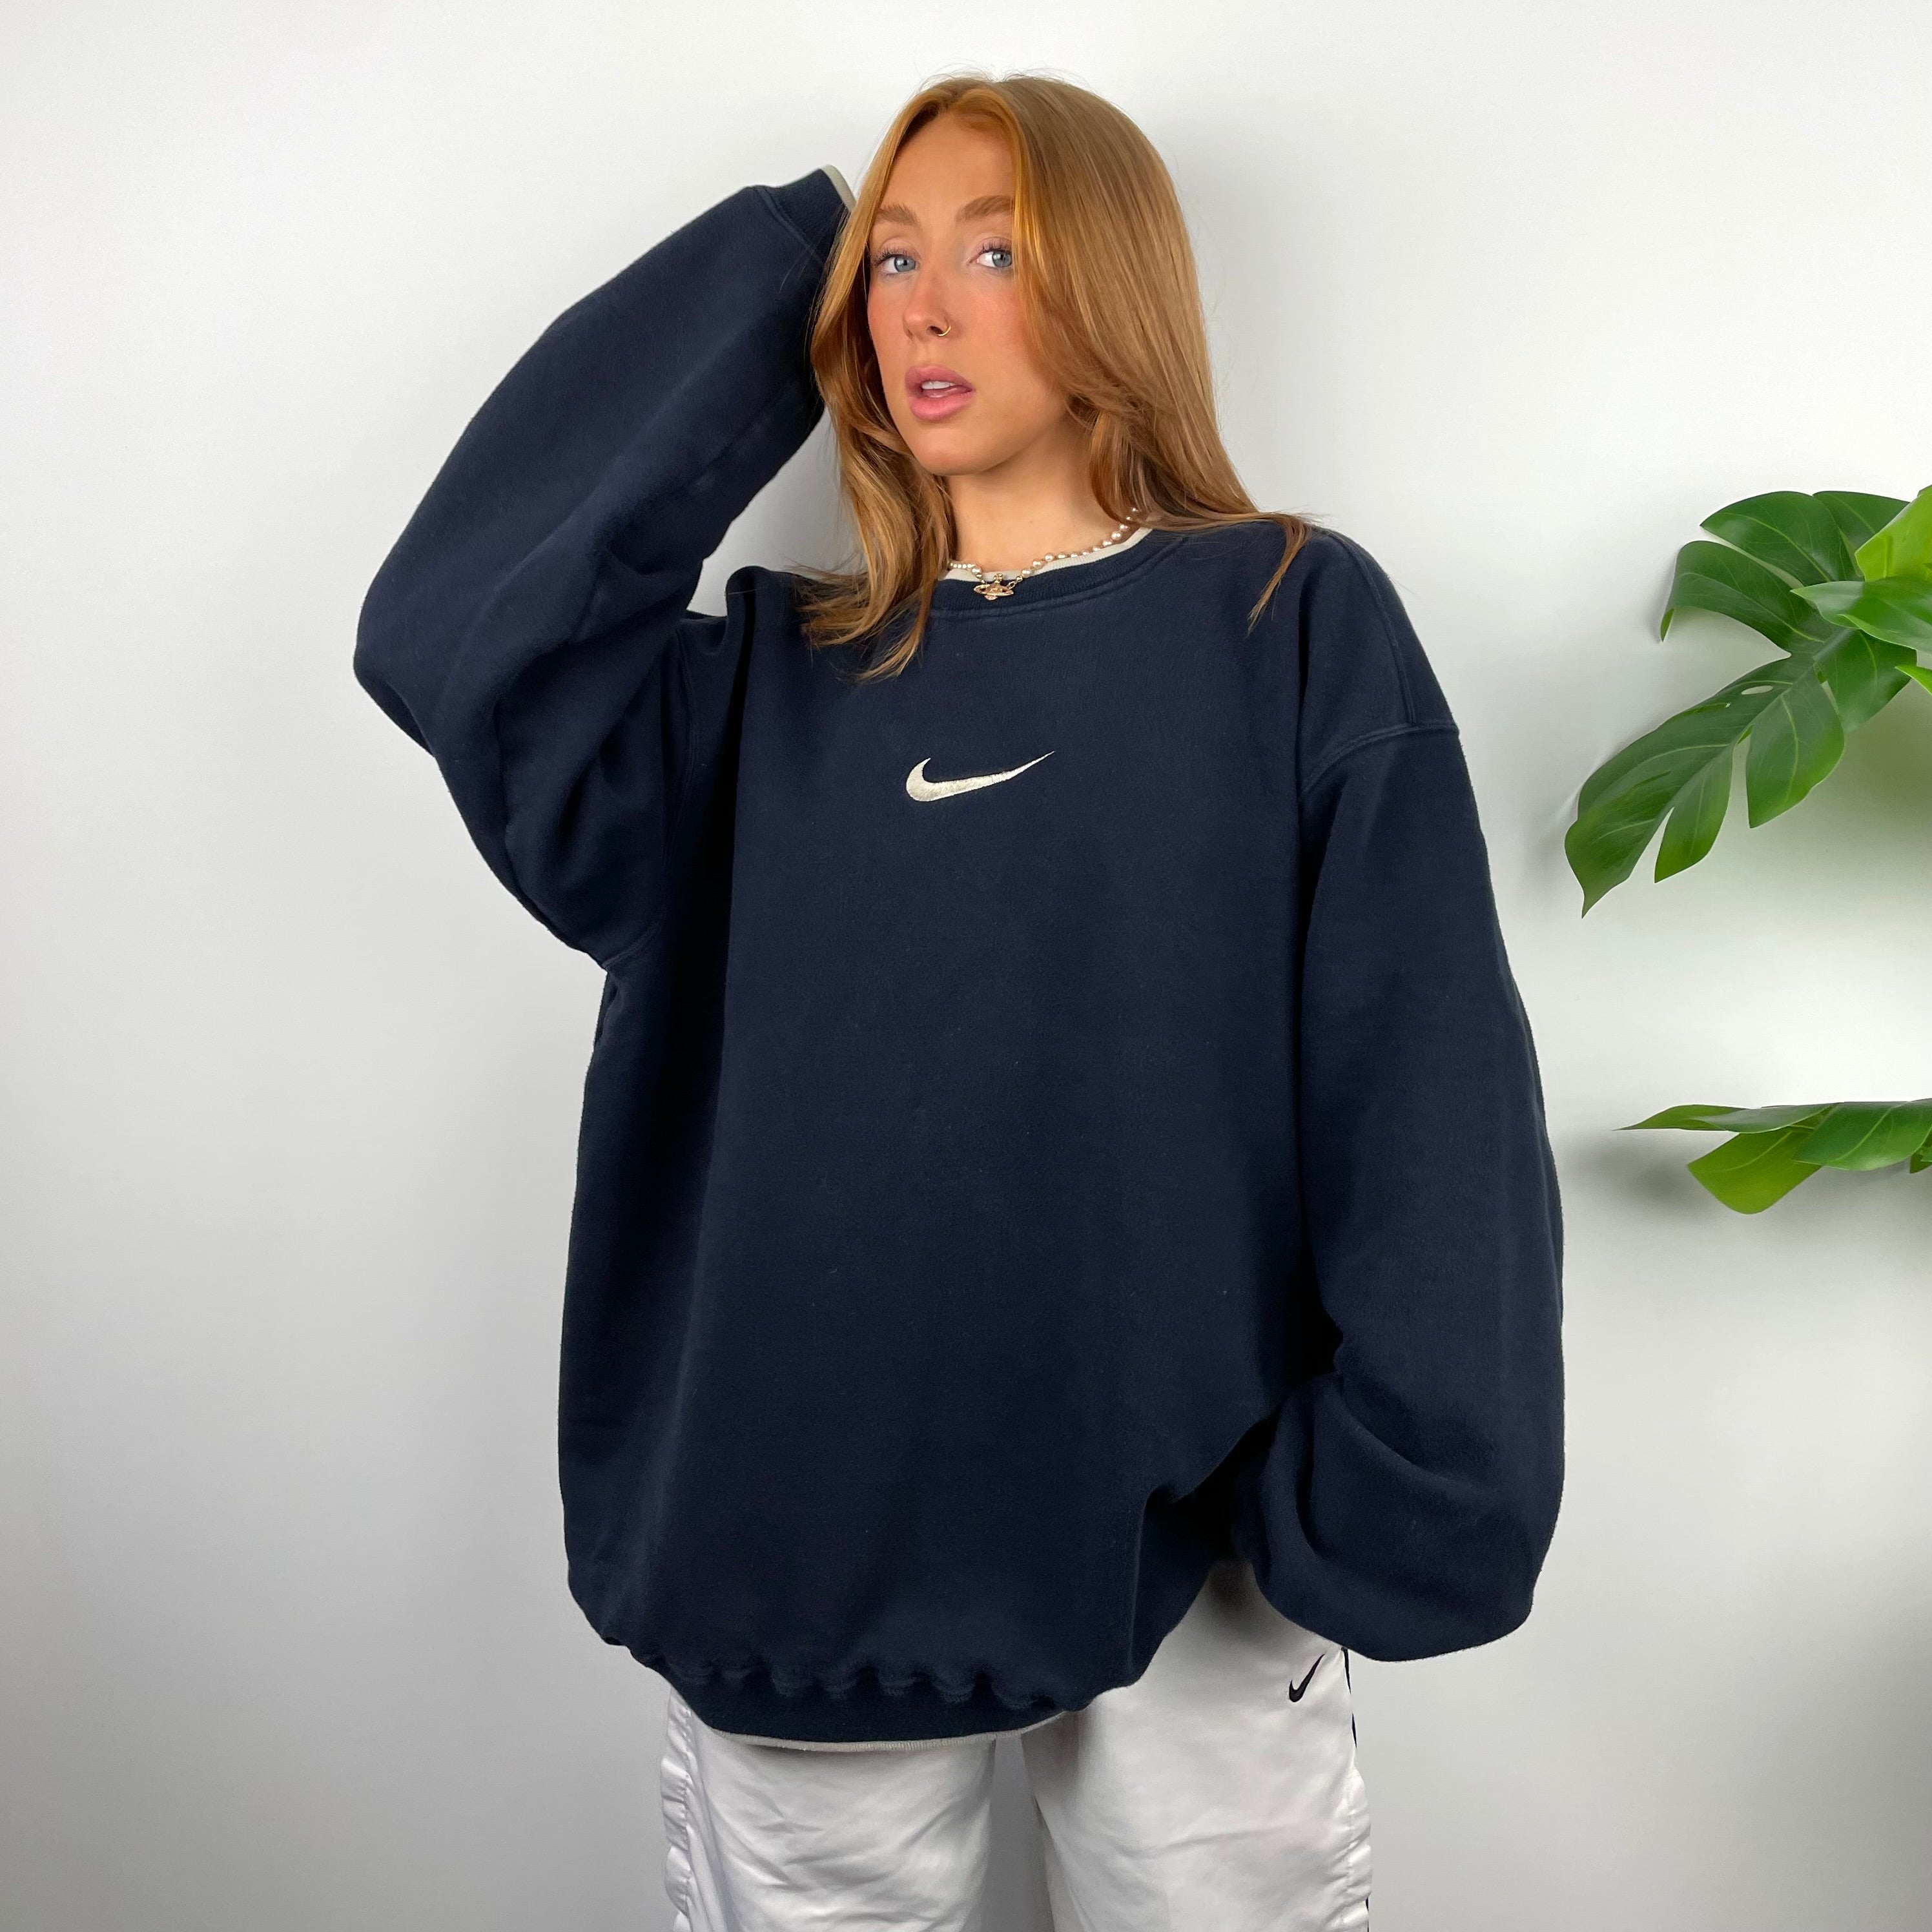 Nike Navy Embroidered Swoosh Sweatshirt (XXL)